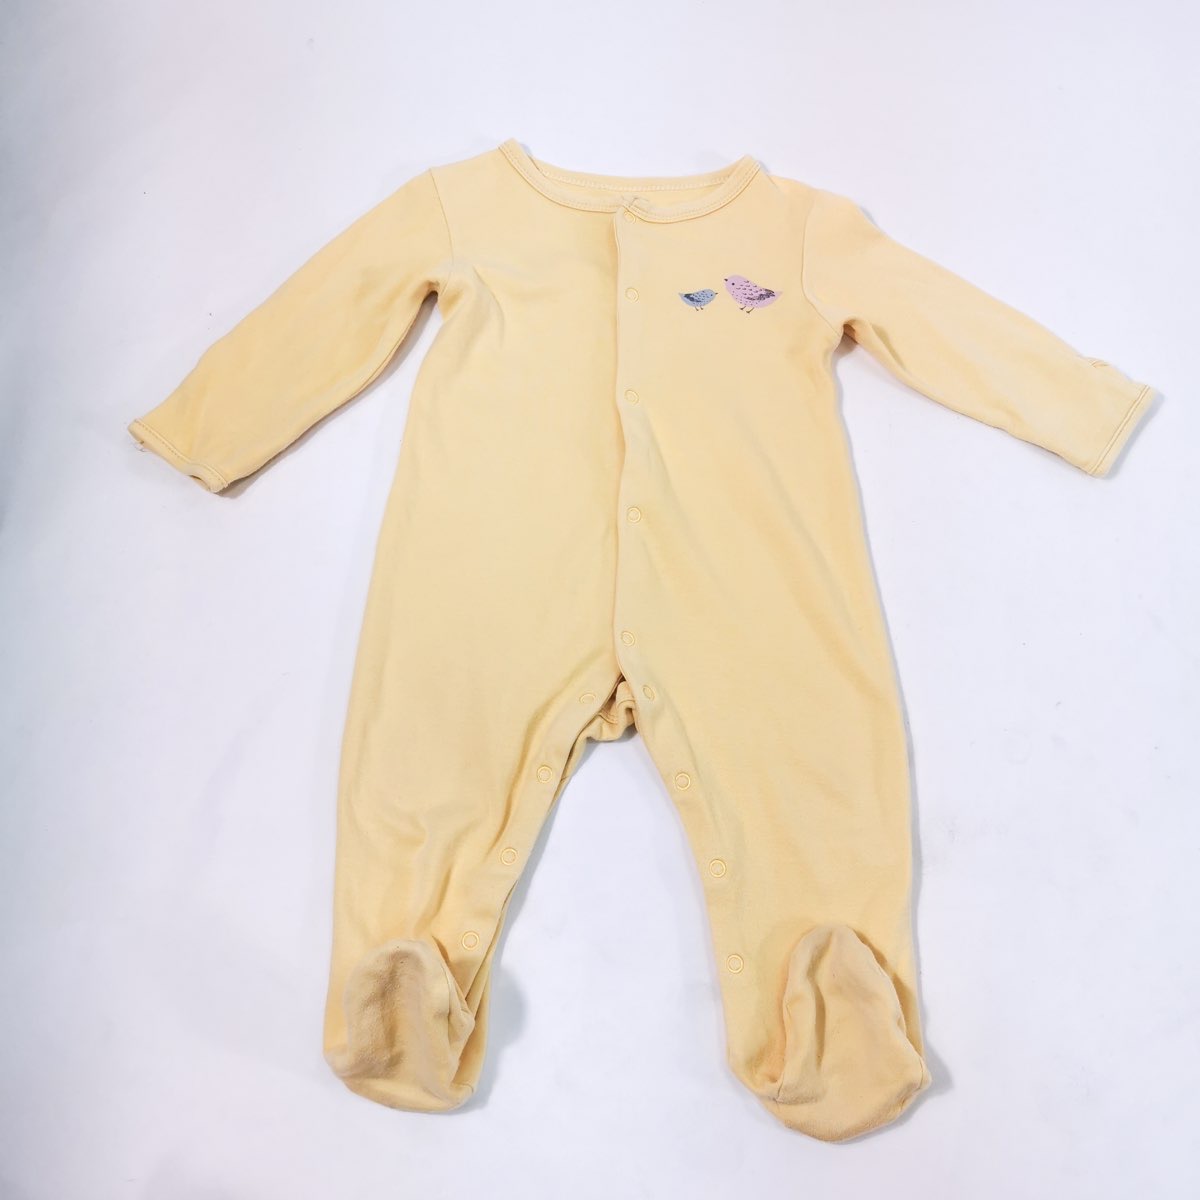 MAMAS & PAPAS ชุดนอนเด็กทารก ชุดจั๊มสูทขายาว แขนยาวมีถุงมือรวมอยู่เพียงแค่พับ